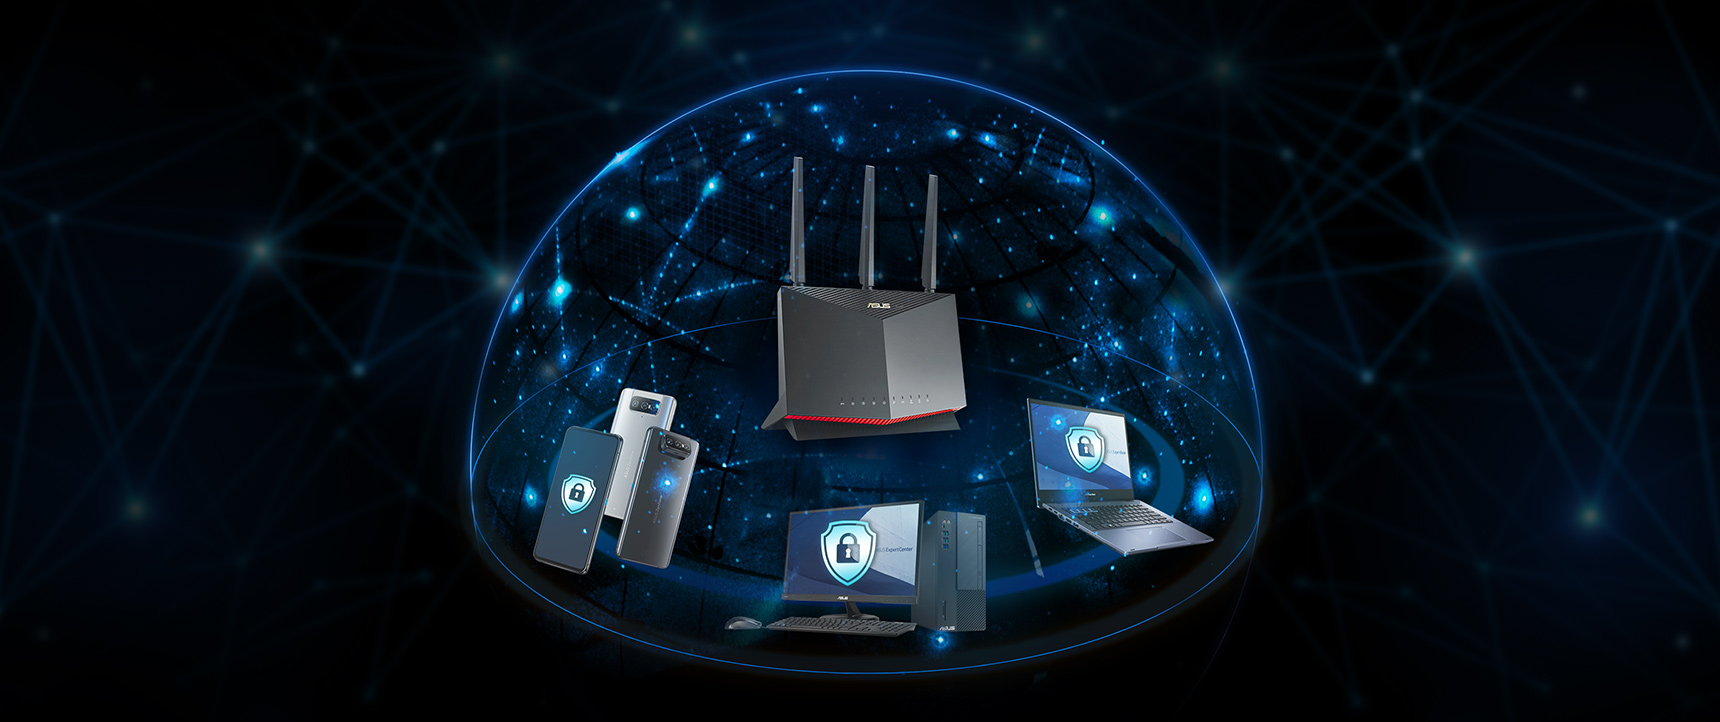 La plupart des routeurs ASUS intègrent la technologie AiProtection développée par Trend Micro™, qui garantit la protection de tous les appareils de votre réseau professionnel.